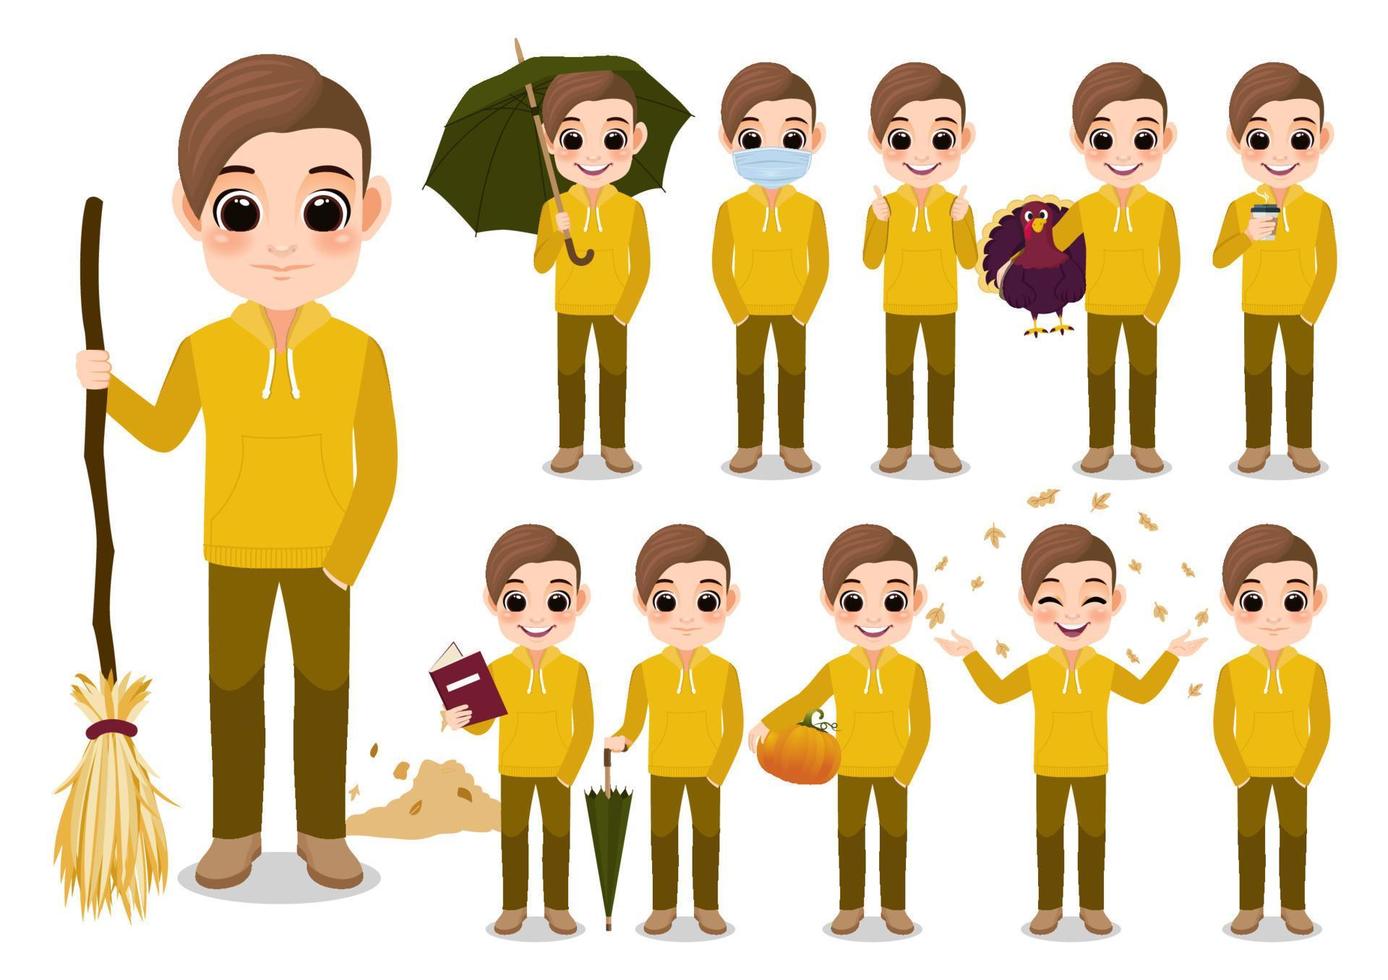 coleção de atividades ao ar livre de outono menino personagem de desenho animado com jaqueta com capuz amarelo, desenho isolado em ilustração vetorial de fundo branco vetor